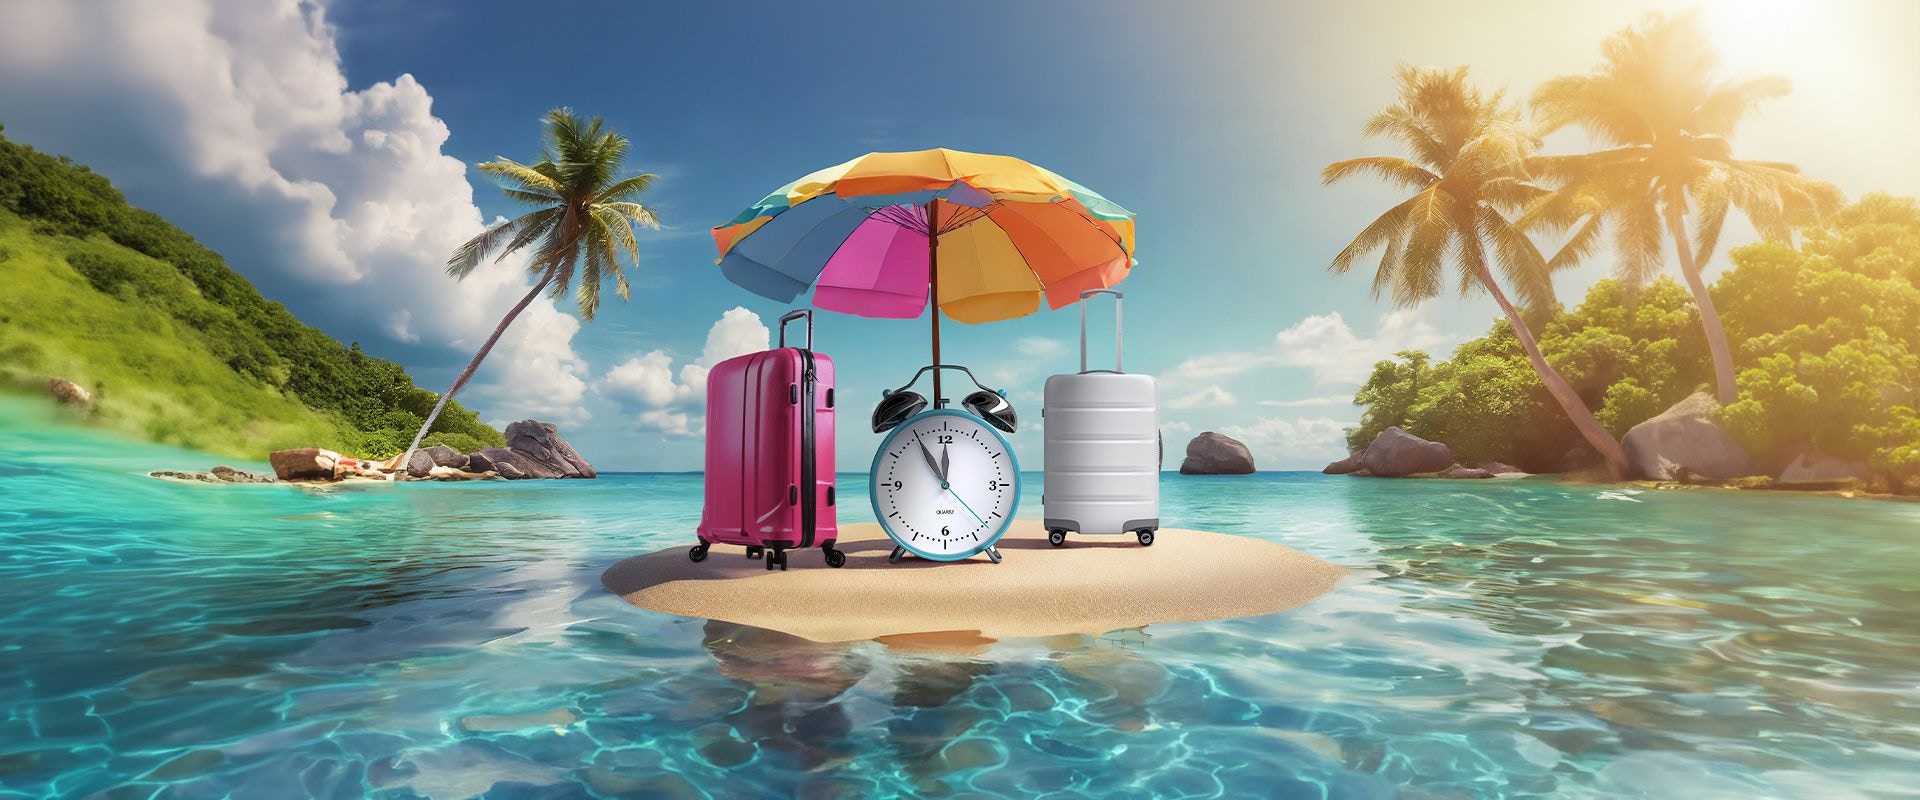 Eine Uhr, zwei Koffer und ein Sonnenschirm auf einer Insel im Meer.